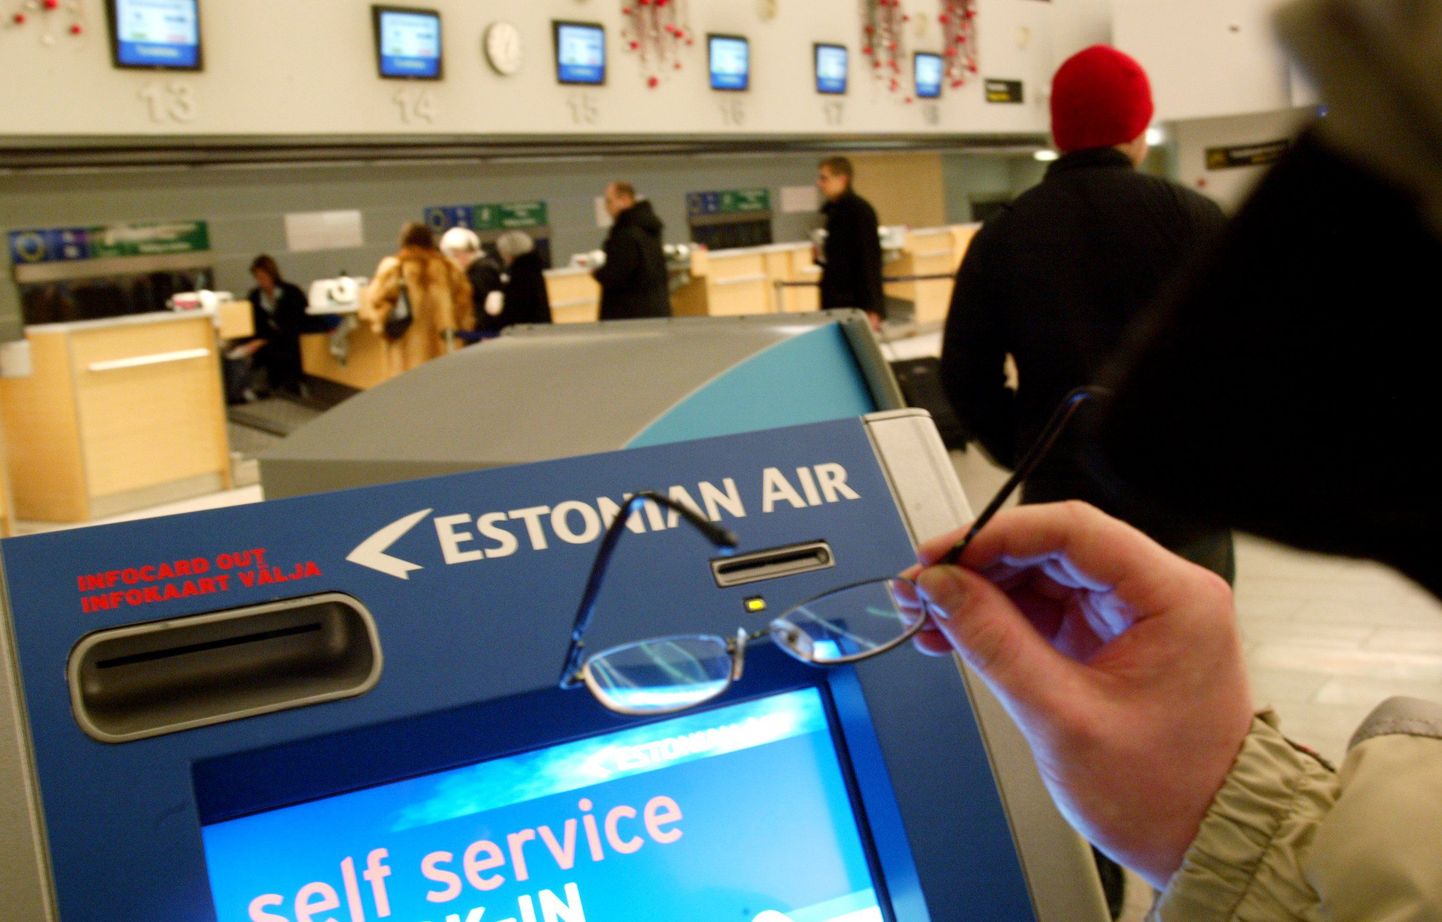 Kui kodus puudub internetiühendus või printer, saab Tallinna lennujaamas lisaks check-in laudadele kasutada ka check-in automaate.